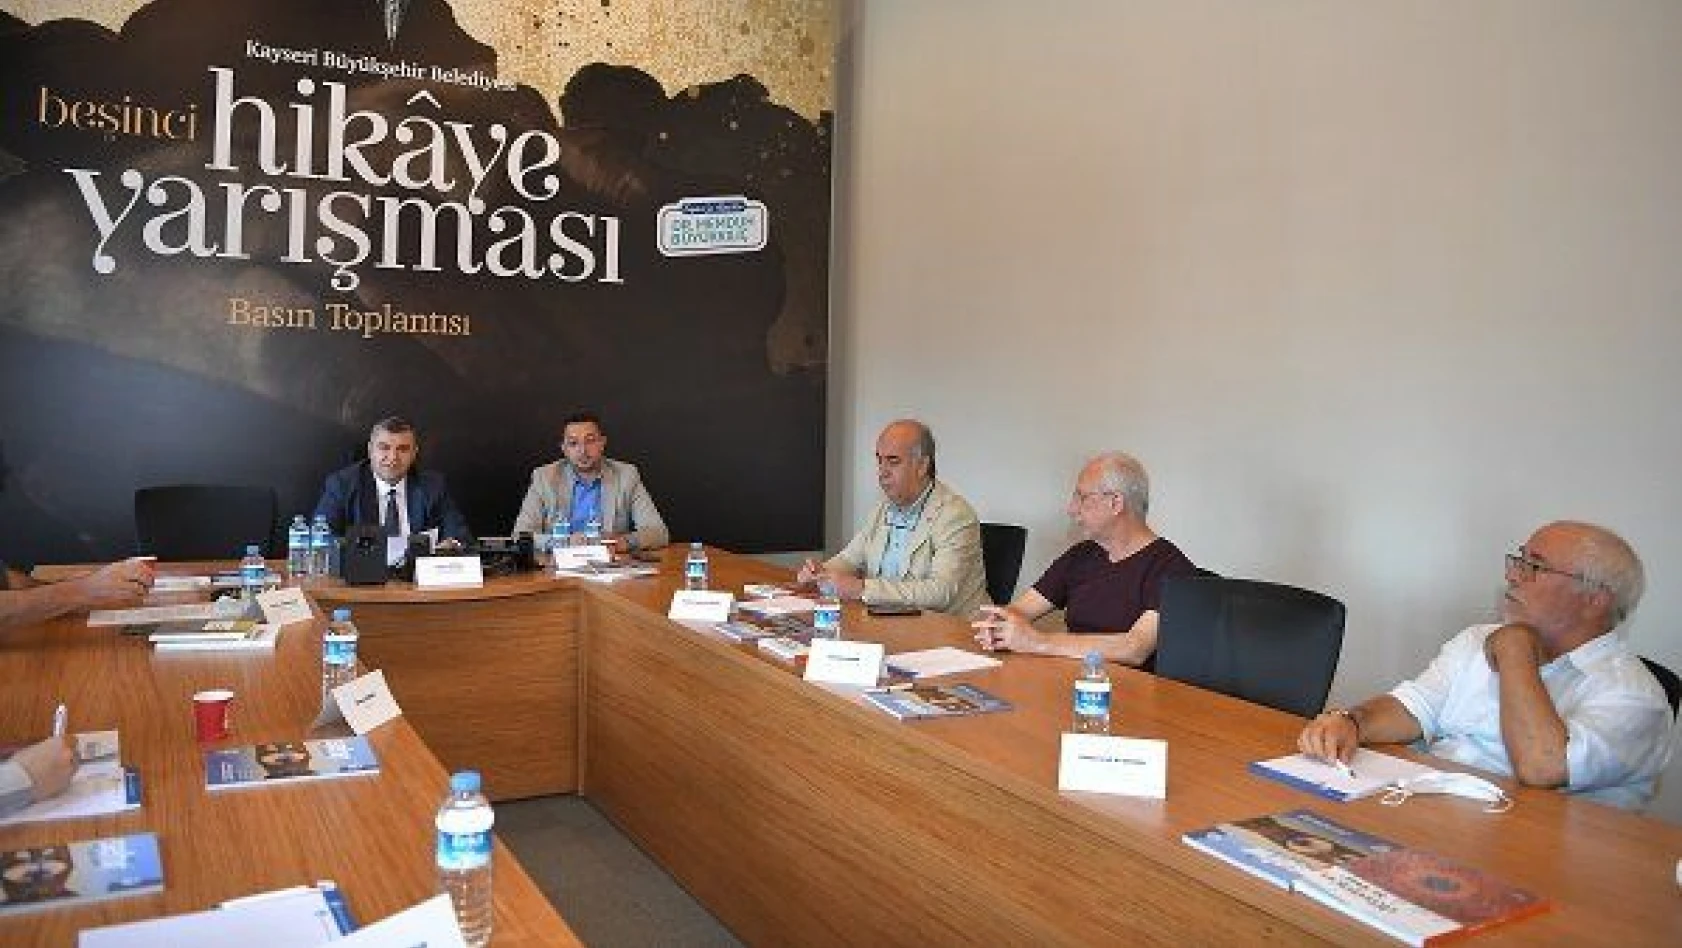 Kayseri Büyükşehir Belediyesince düzenlenen hikaye yarışması sonuçlandı